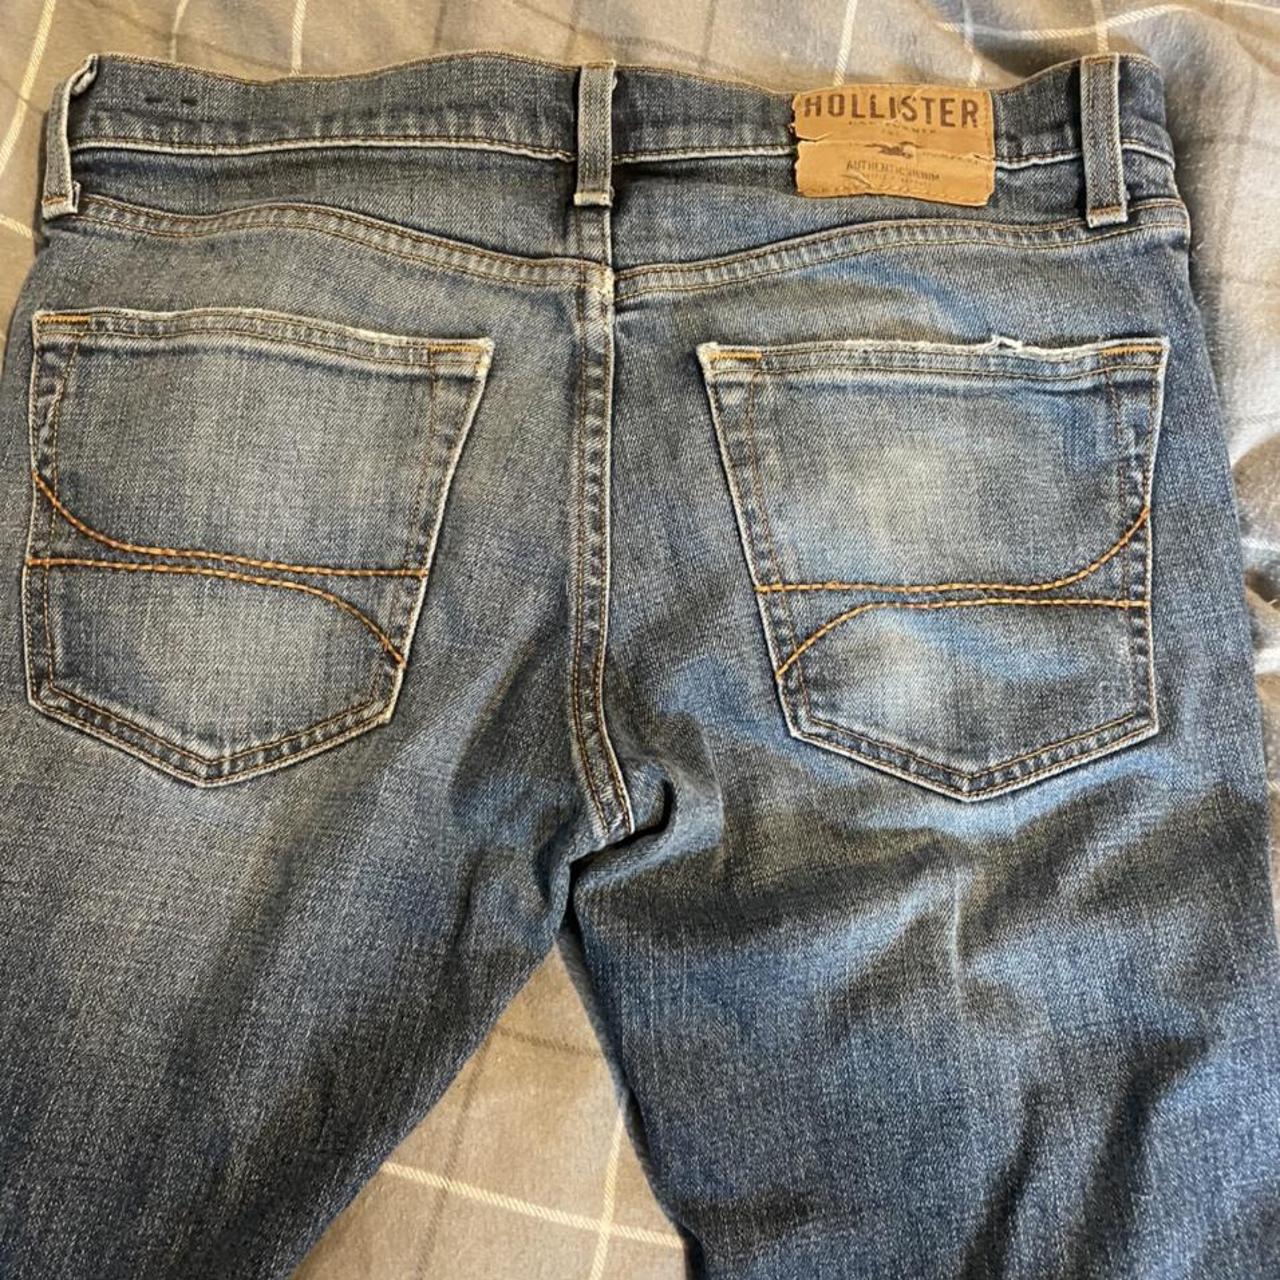 Hollister skinny jeans - Depop